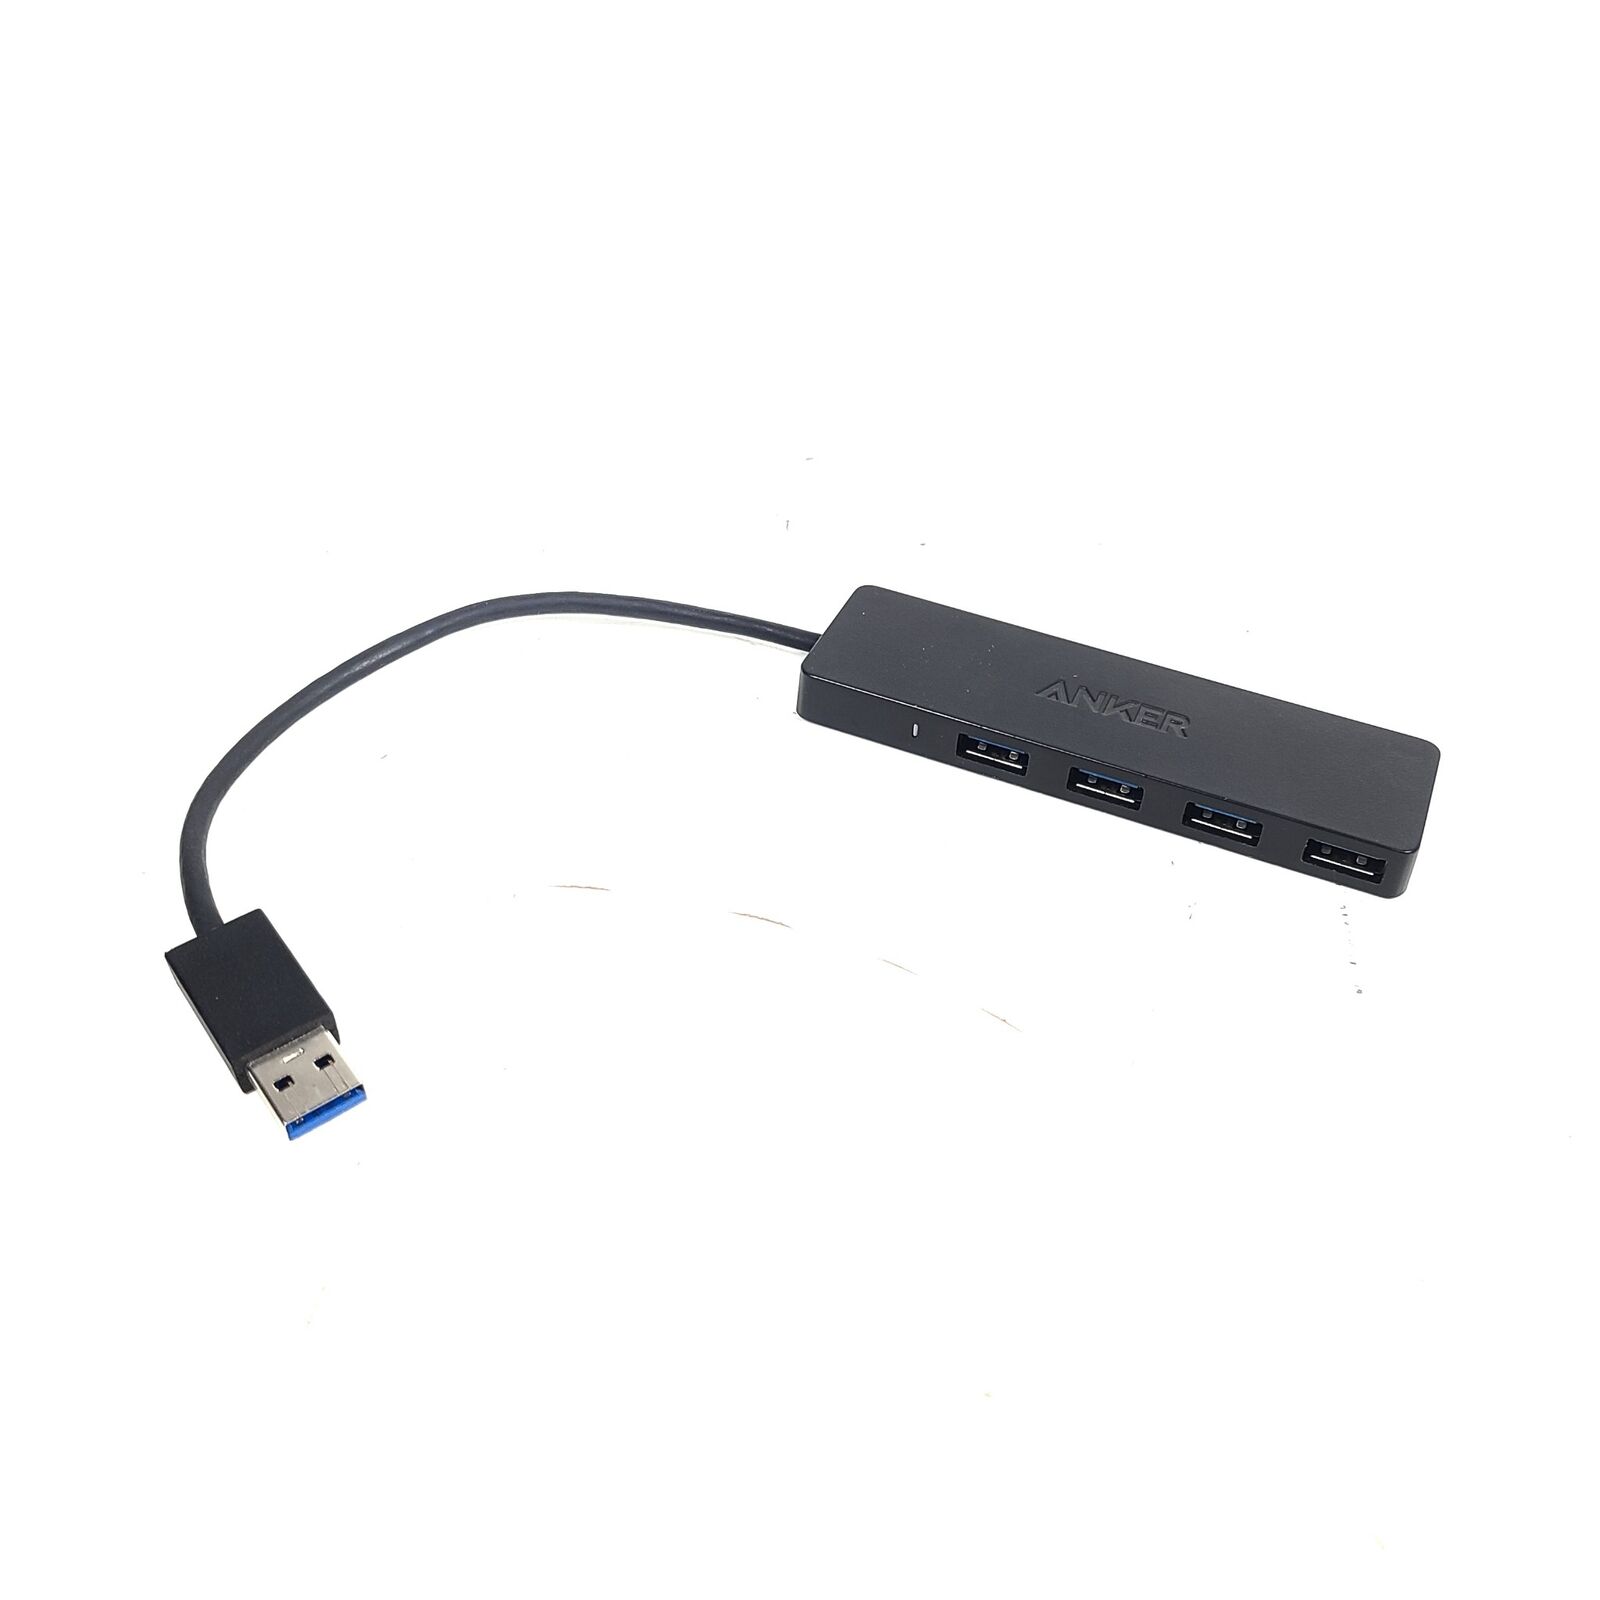 Anker 4-Port Ultra Slim USB 3.0 DataHub - Black - A7516